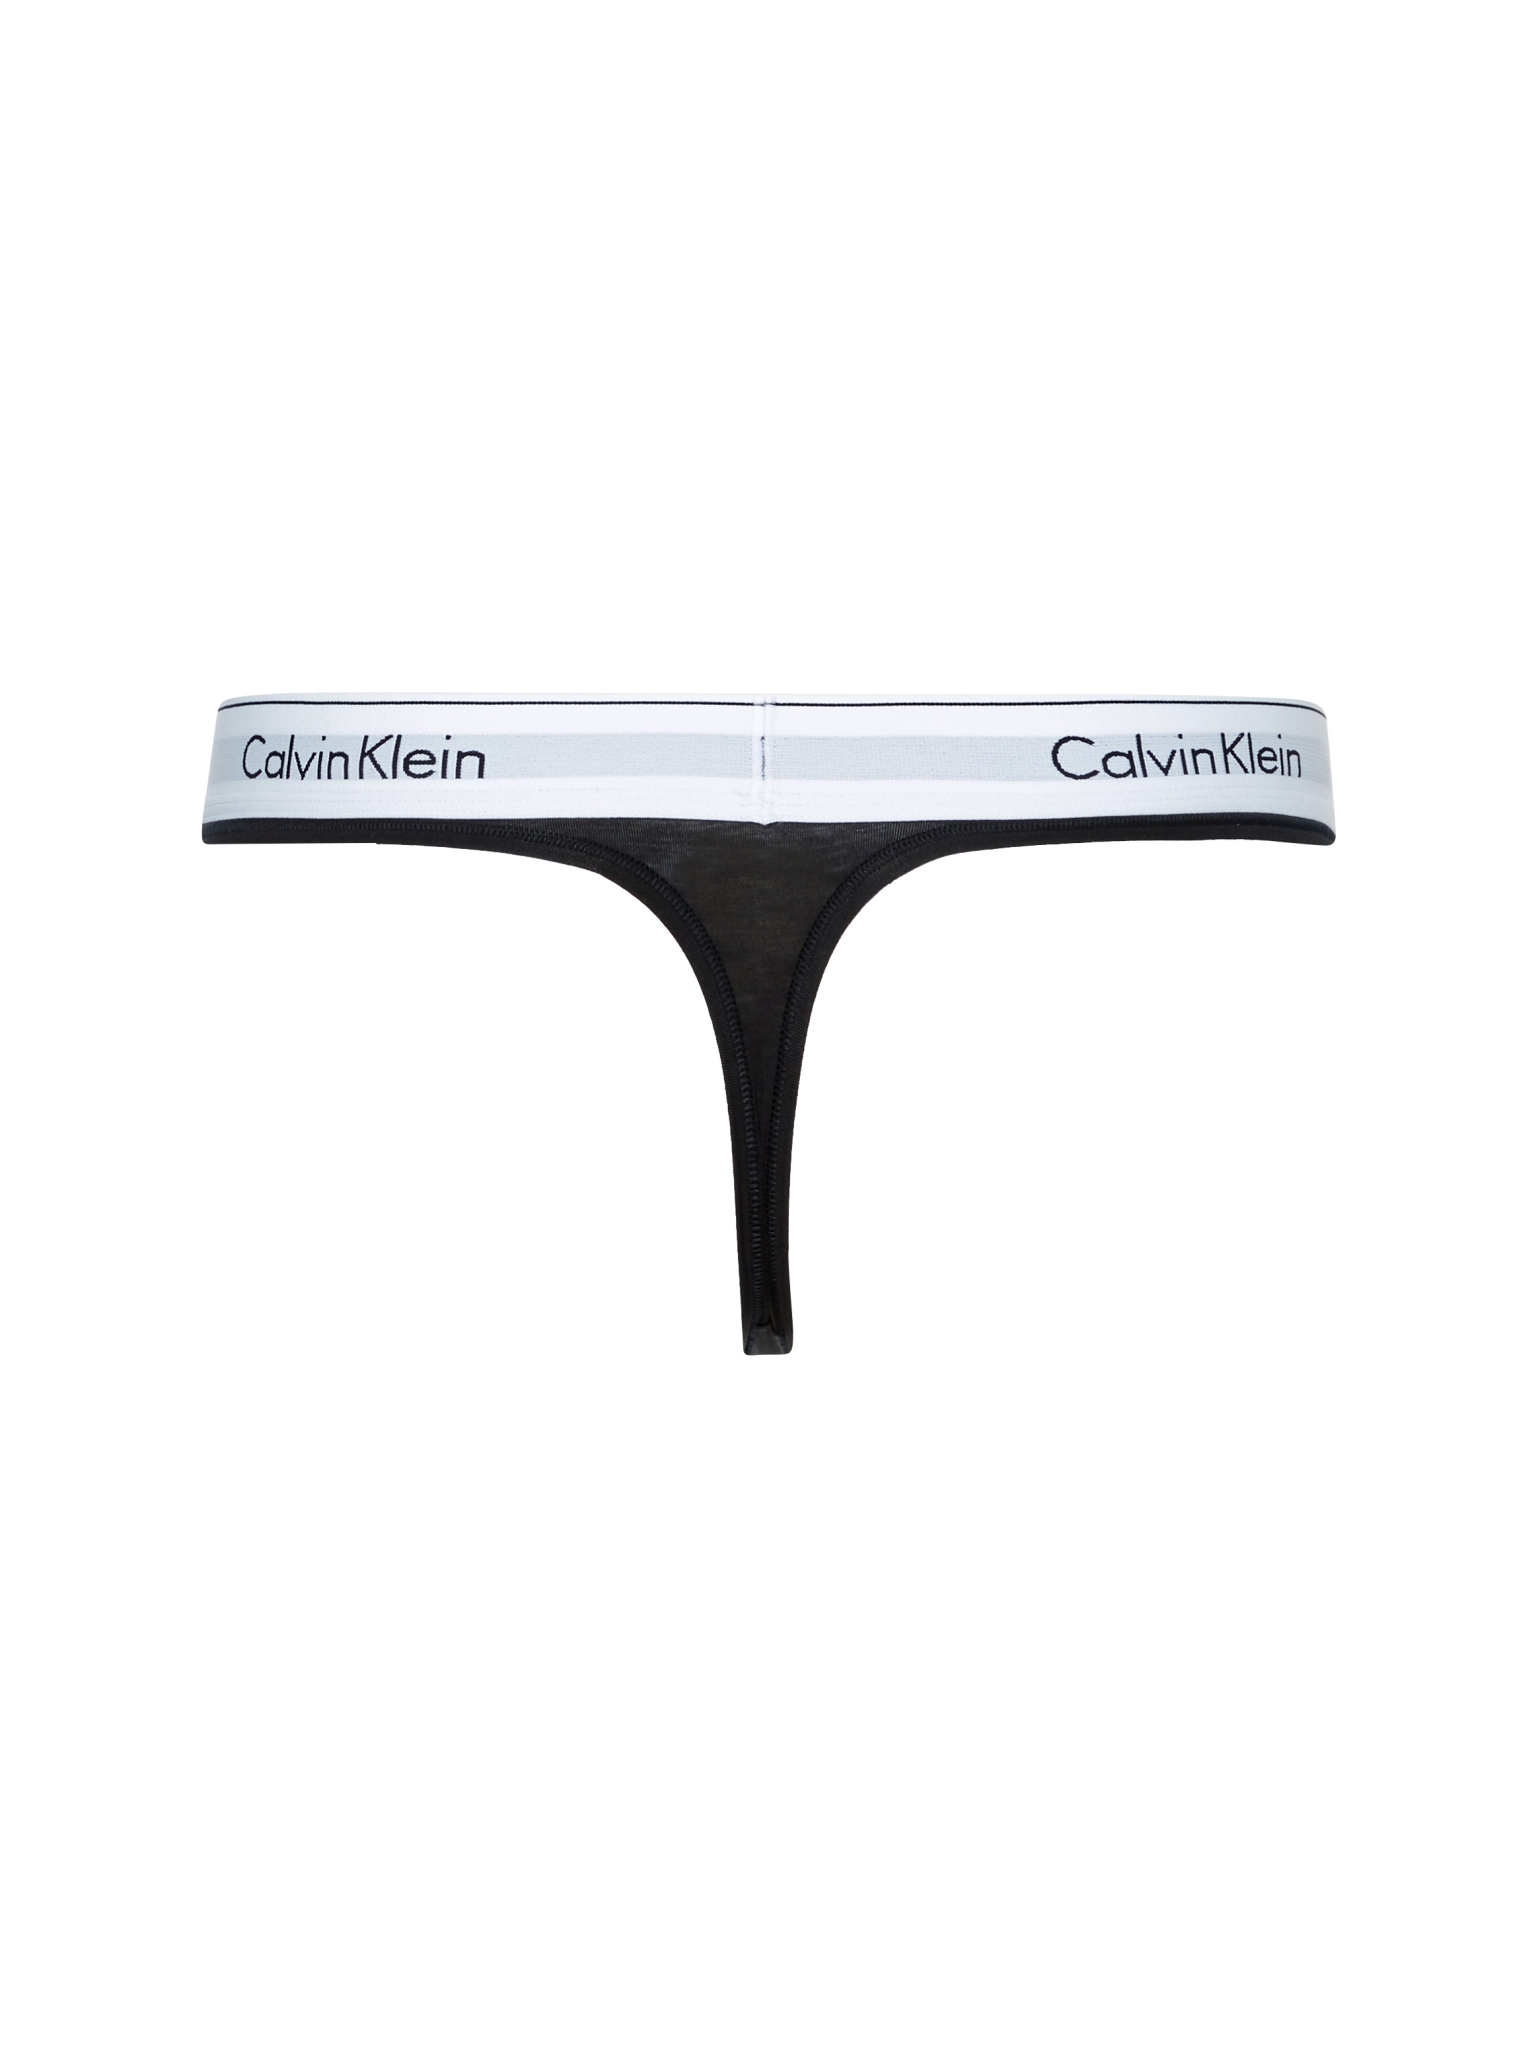 CALVIN KLEIN MODERN COTTON STRING 10497207 kaufen | WÖHRL